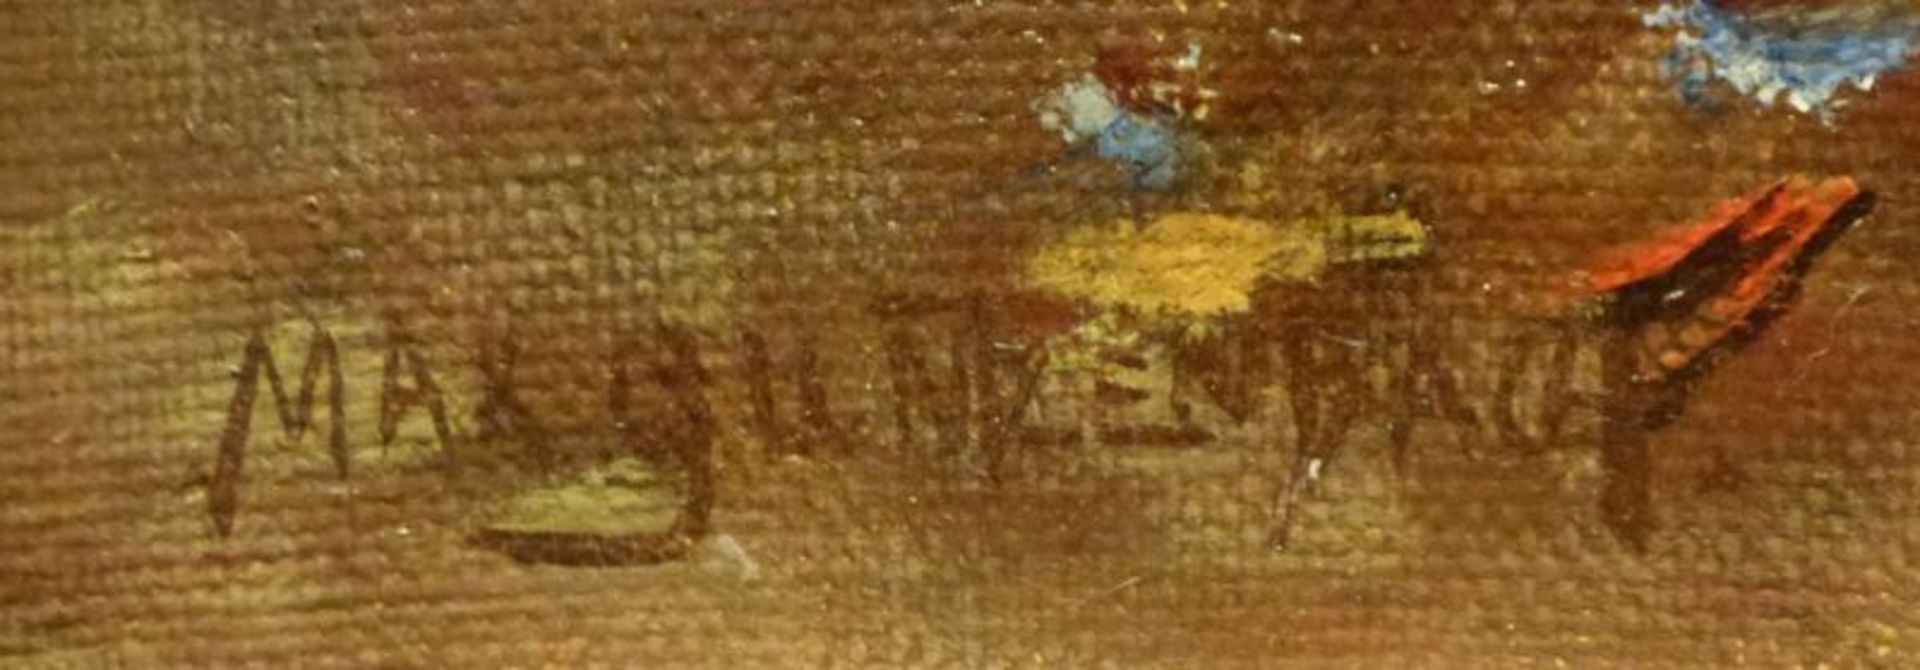 EntenEntenMax Guntzenbach, 1.Hälfte 20. Jh. Öl/LW, sign., 3 kl. Löcher, 43x63 cm, ger., - Bild 3 aus 3